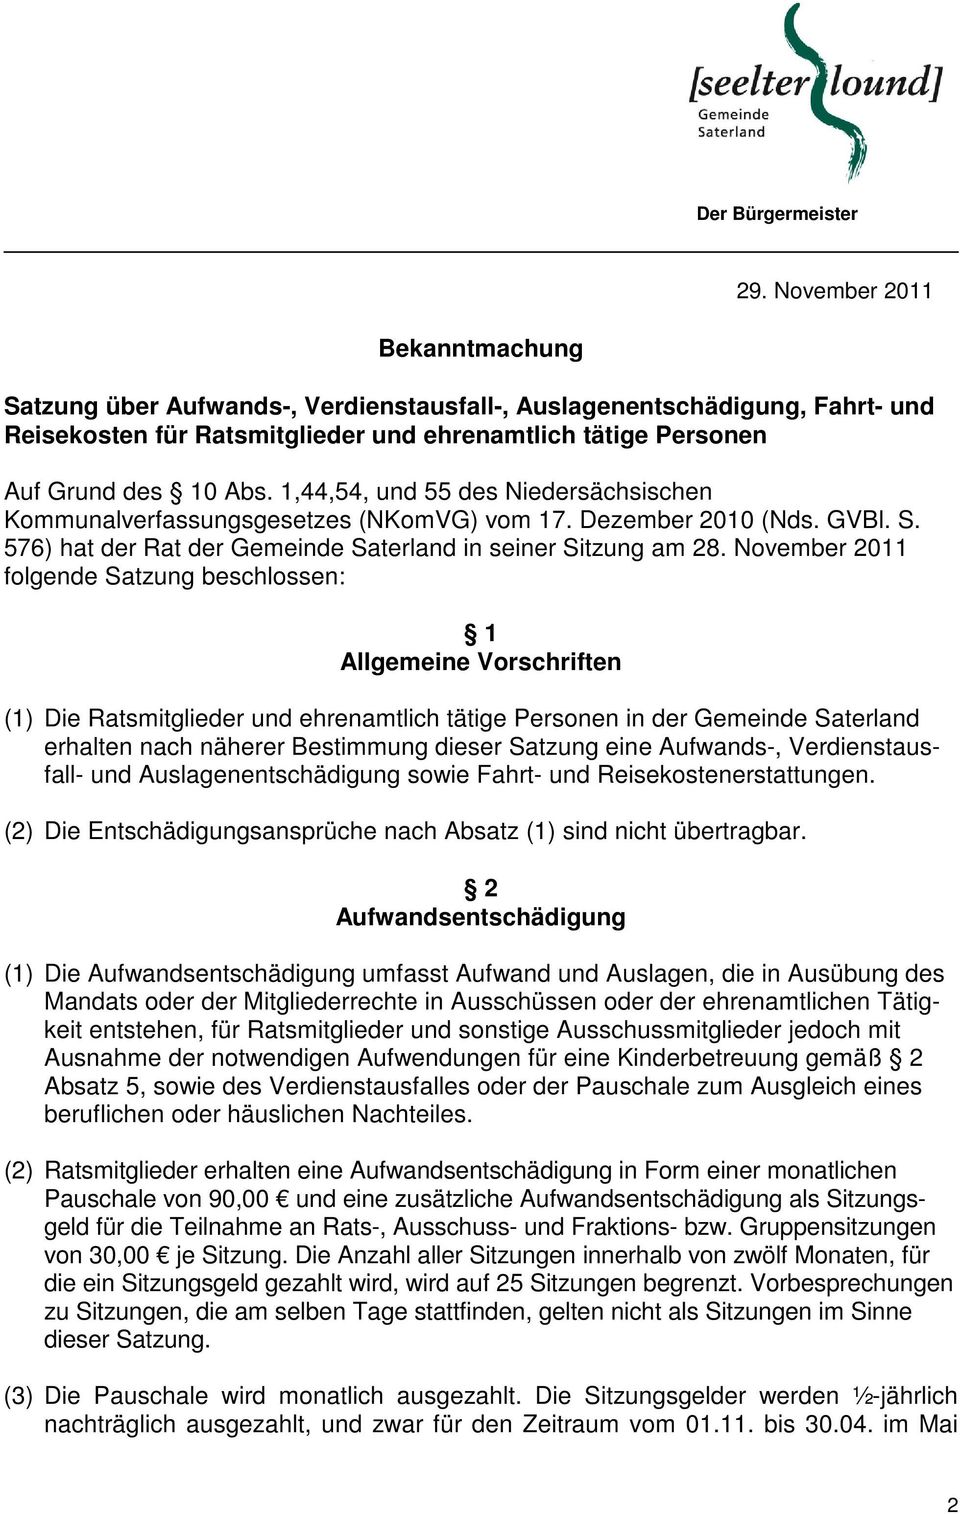 1,44,54, und 55 des Niedersächsischen Kommunalverfassungsgesetzes (NKomVG) vom 17. Dezember 2010 (Nds. GVBl. S. 576) hat der Rat der Gemeinde Saterland in seiner Sitzung am 28.